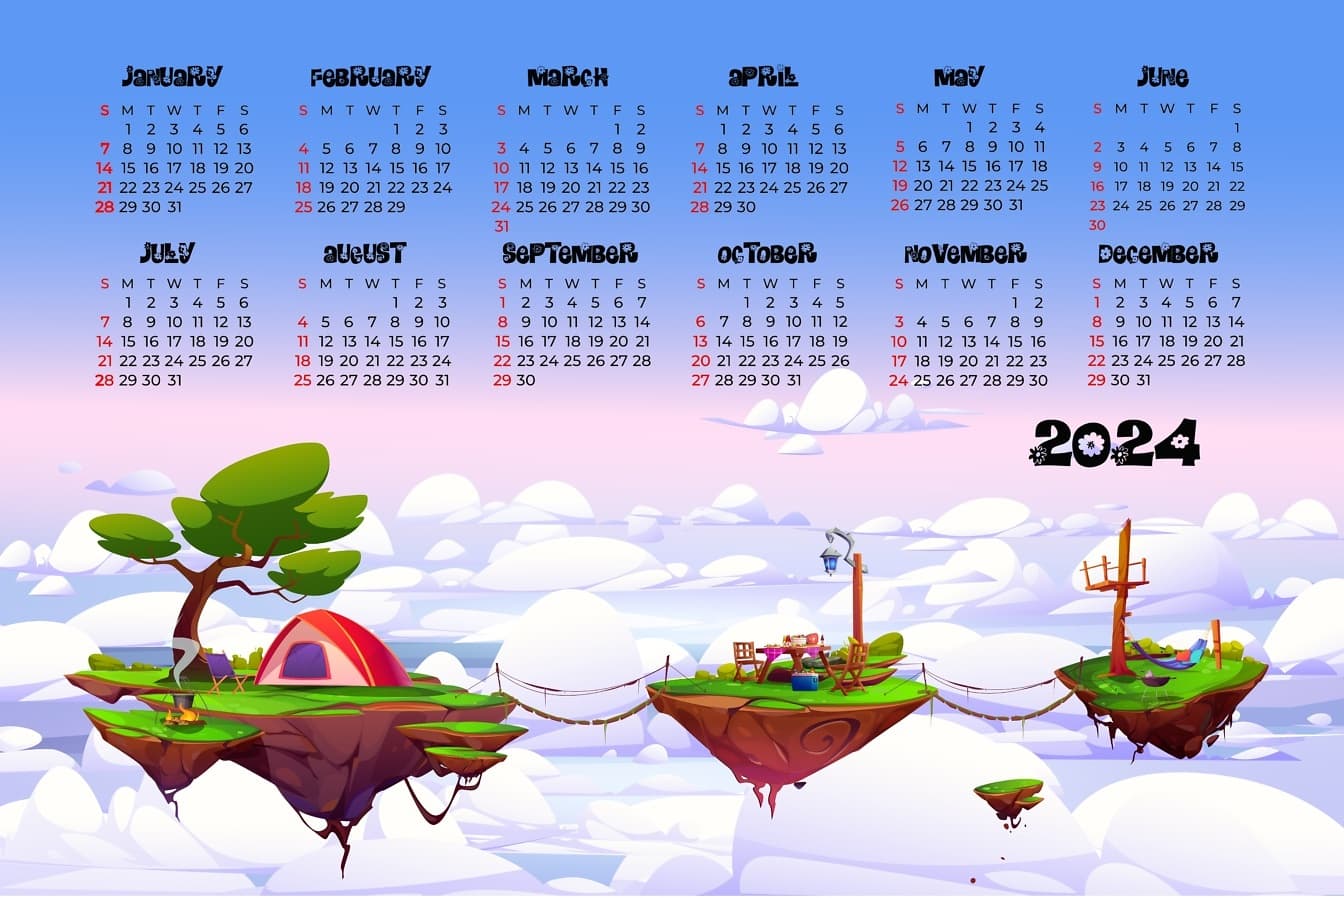 Kalender for 2024 med tegneserieillustration af tre flydende øer